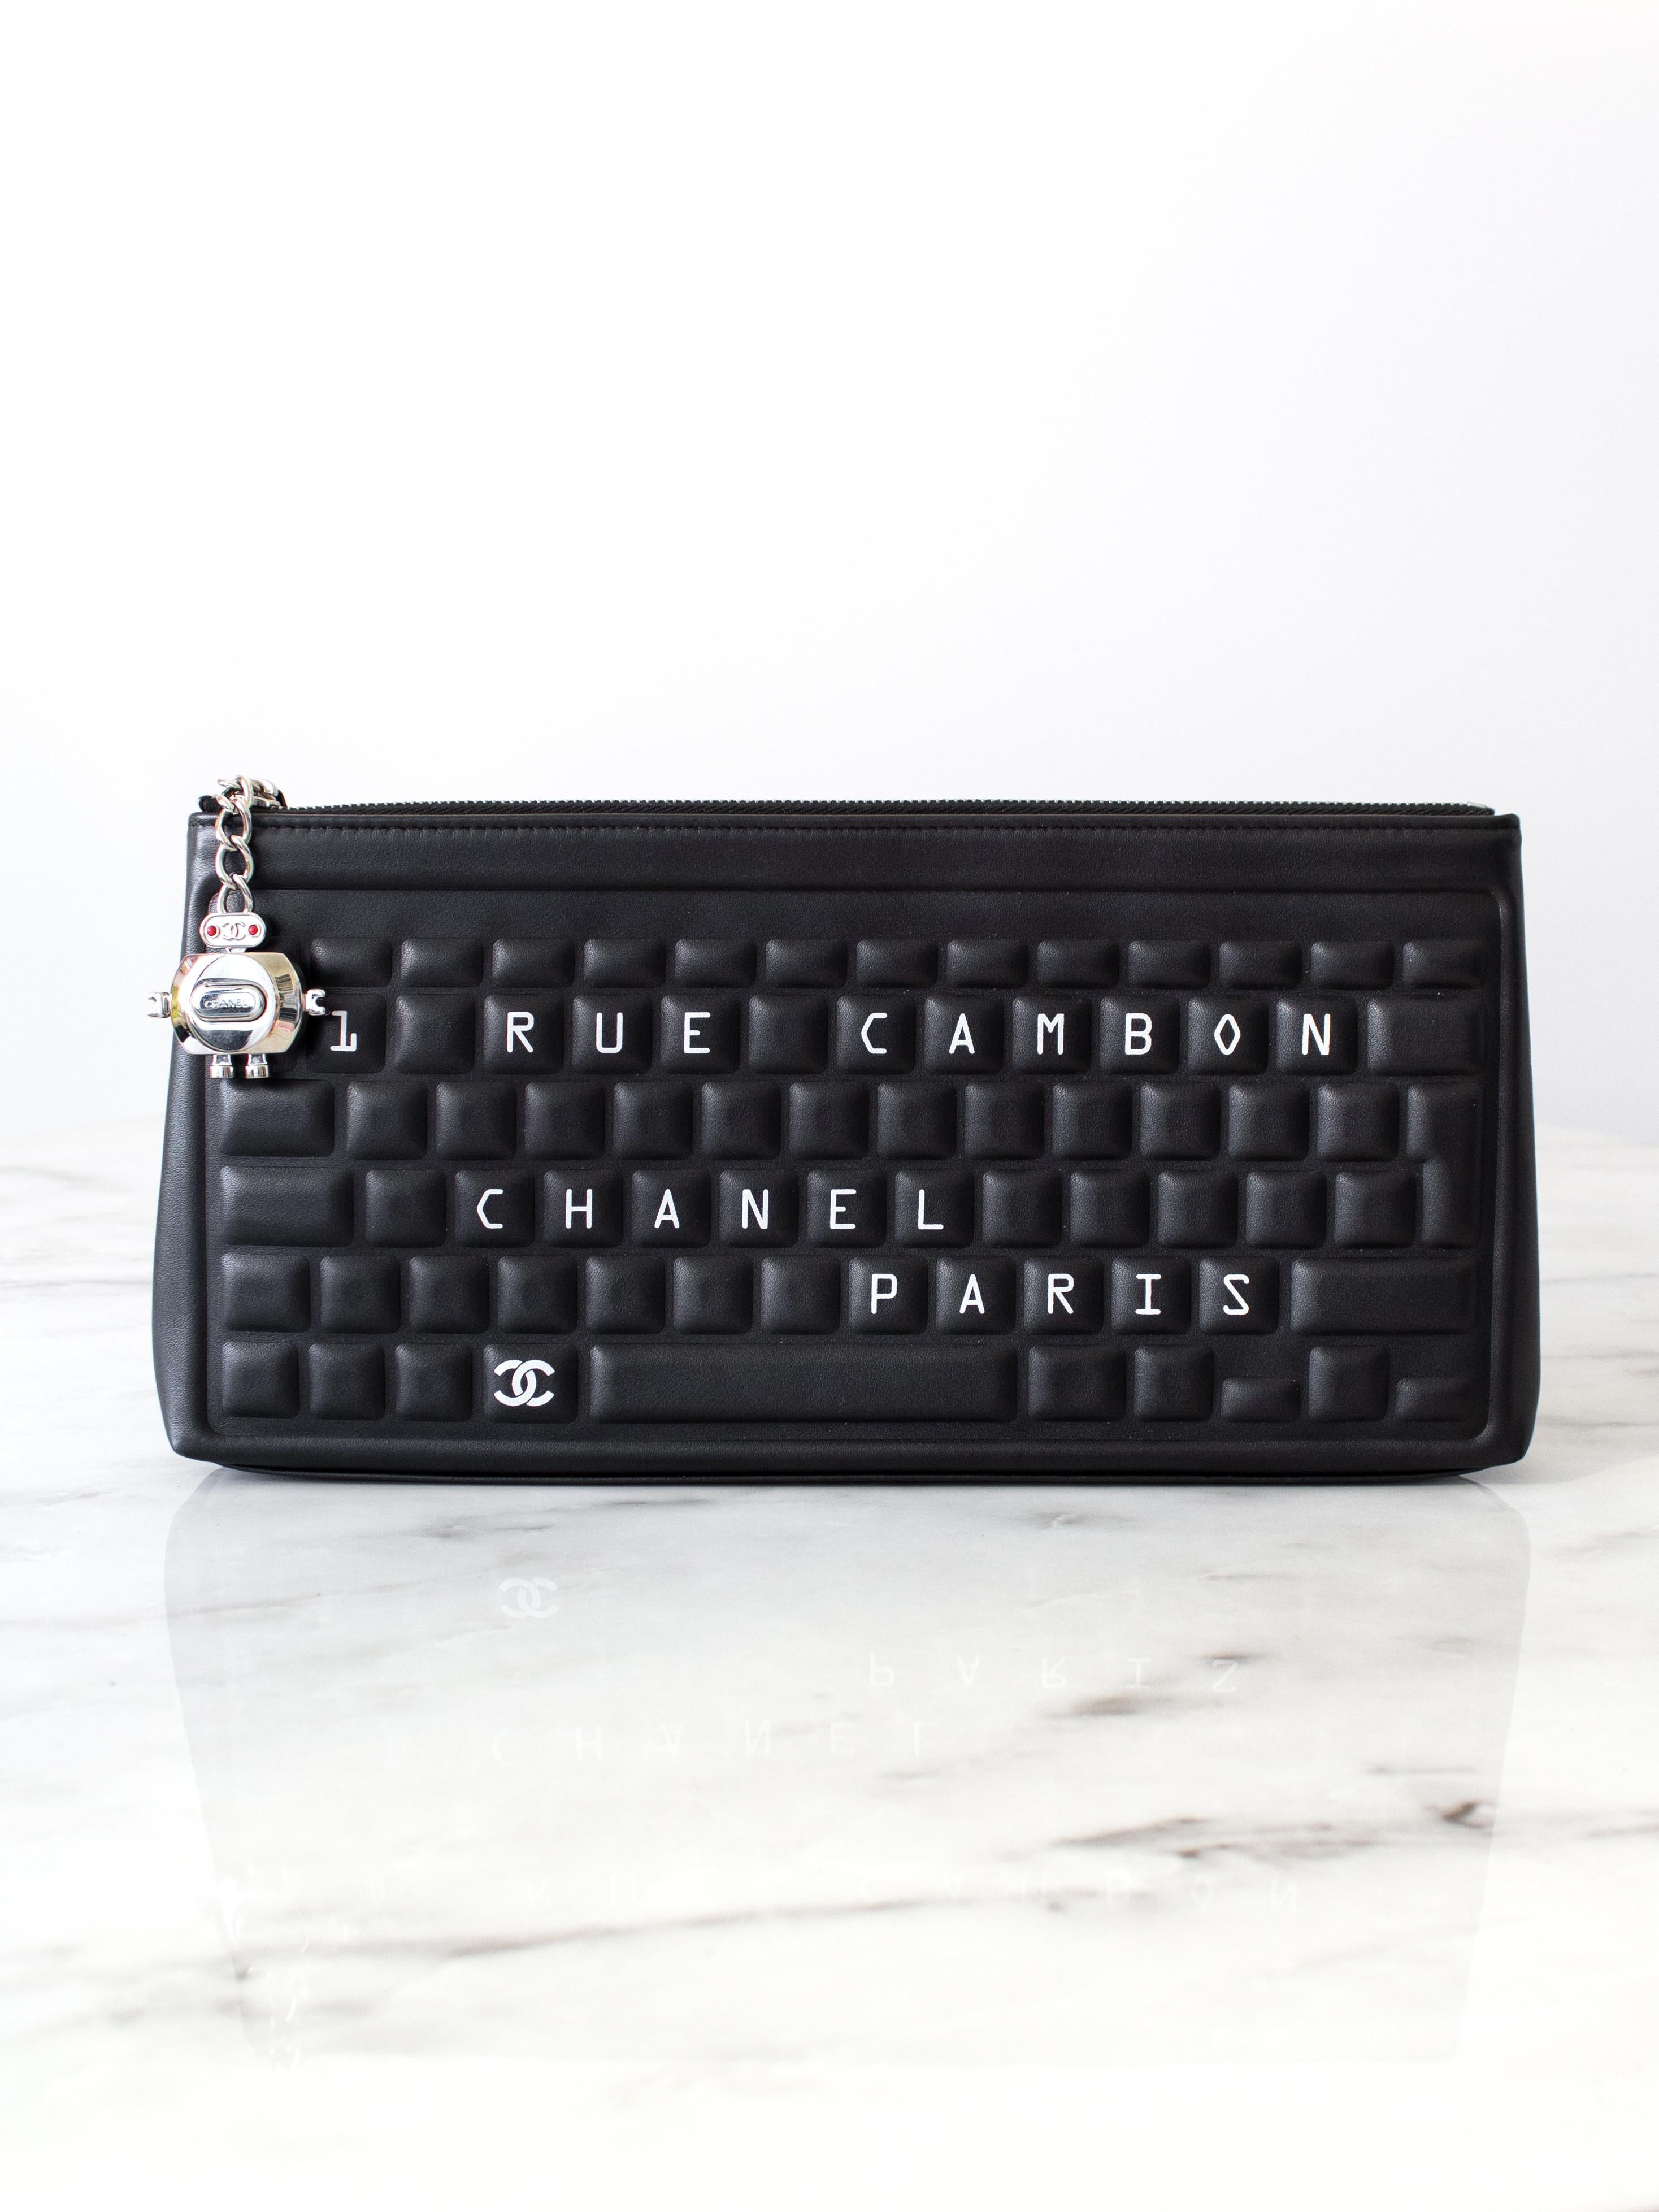 Voici la pochette à clavier la plus recherchée de la Collection Sals de Chanel printemps/été 2017, l'incarnation de la rencontre entre la technologie et la mode. Cette pochette élégante est un must pour toute fashionista technophile ou